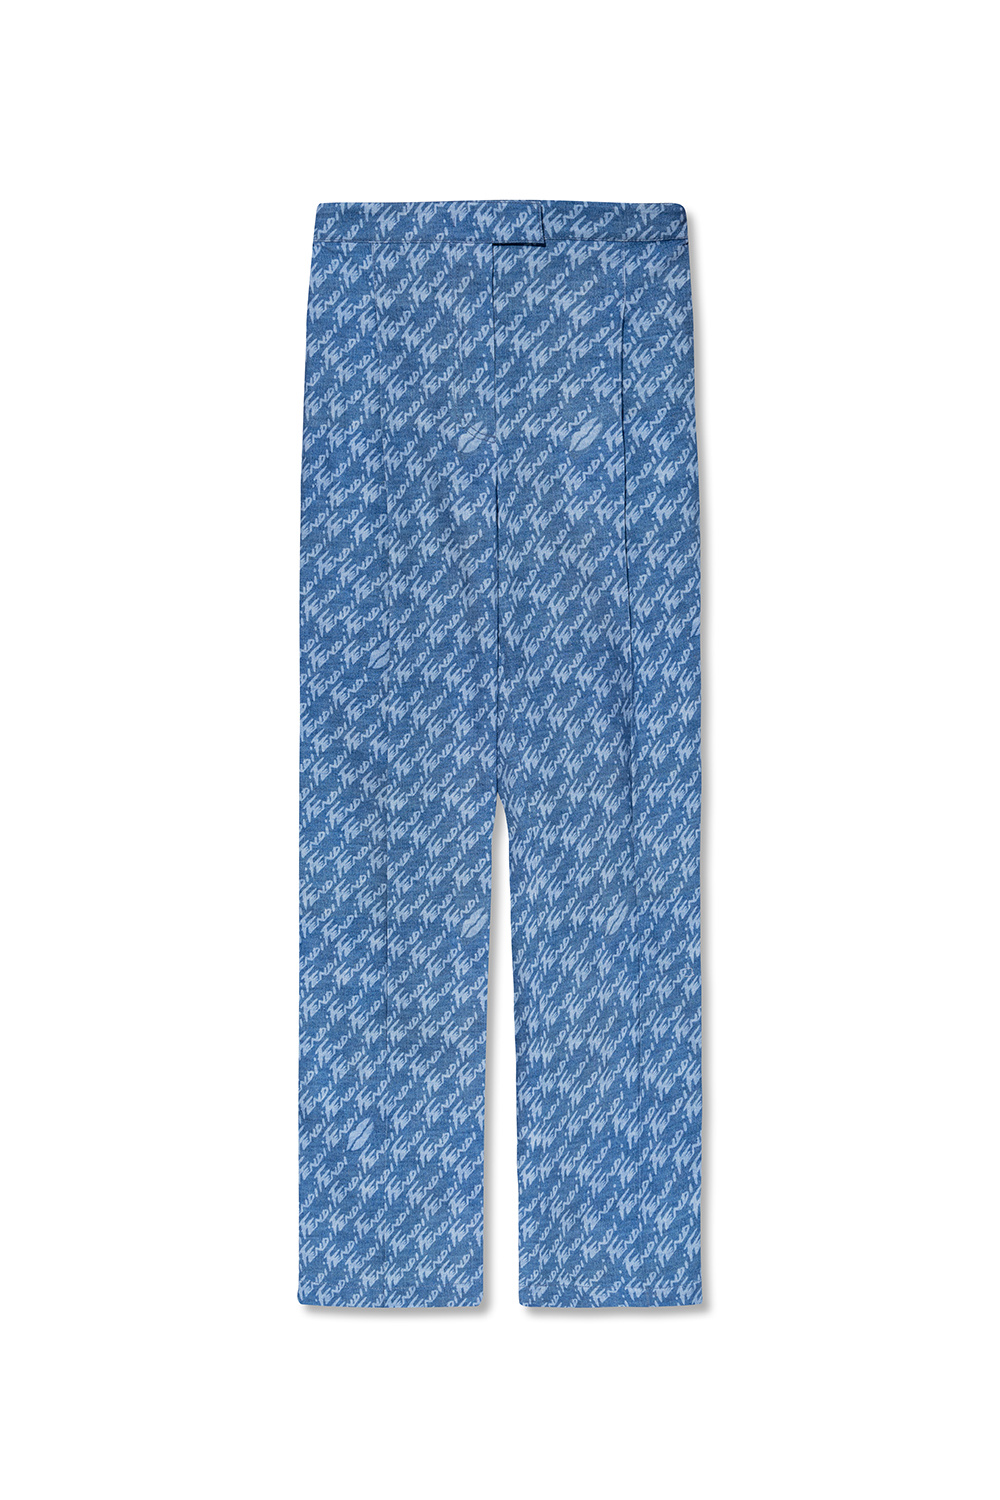 Fendi Trousers with Fendi Brush pattern